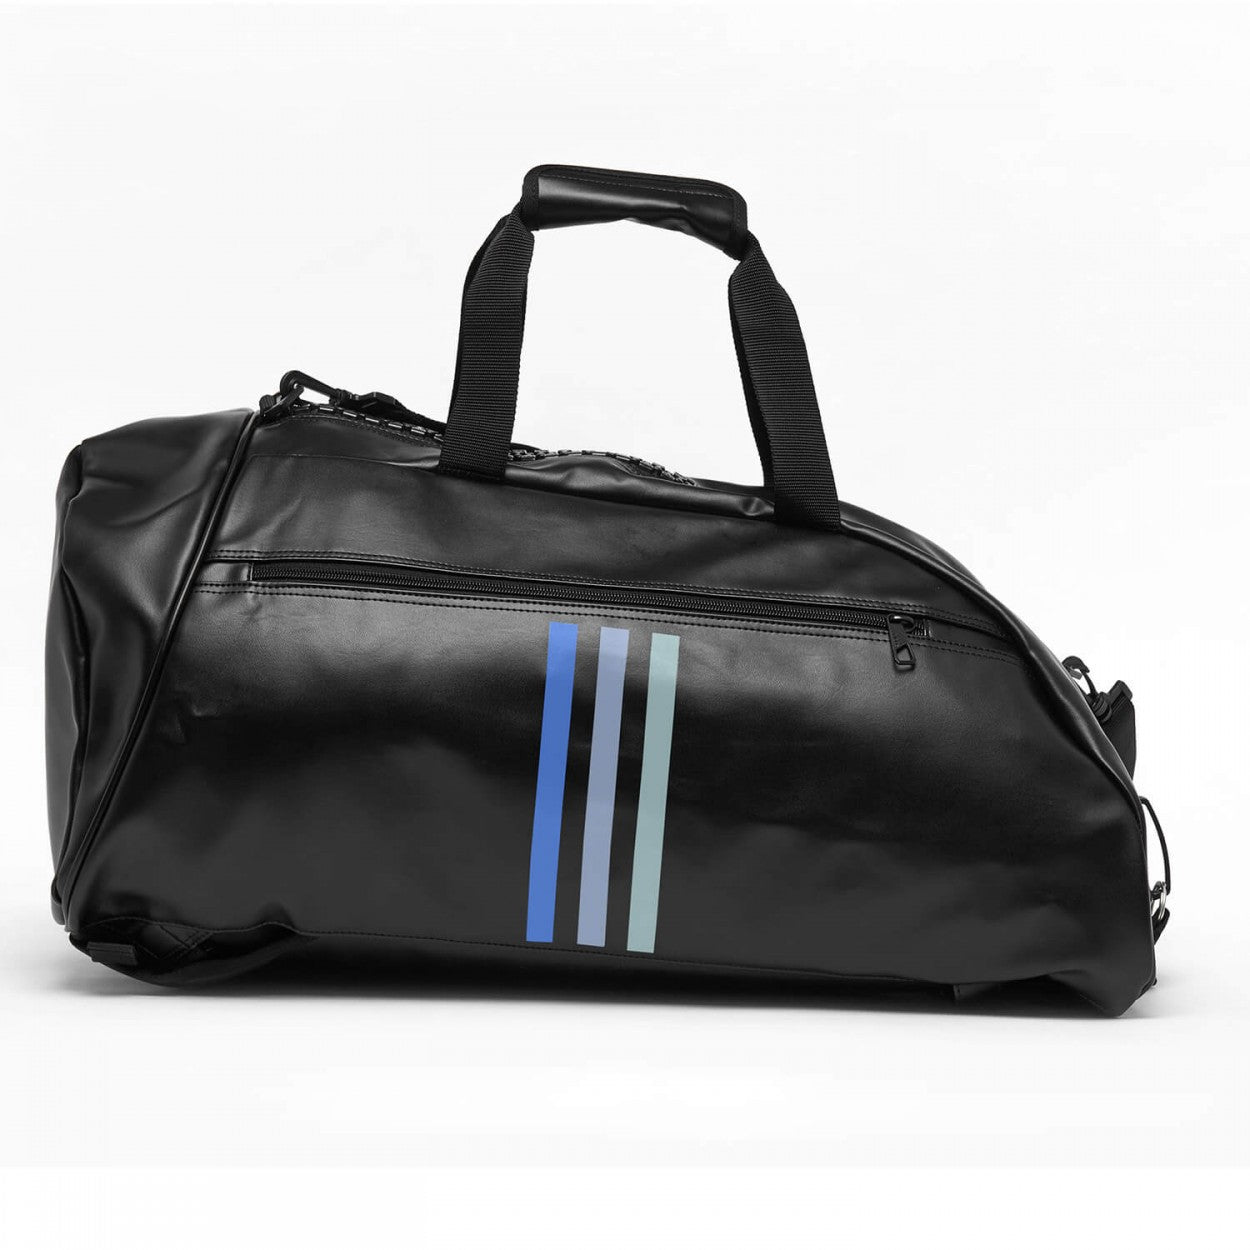 Αθλητική Τσάντα adidas 3 IN 1 TEAMBAG,  Μαύρο/Μπλε